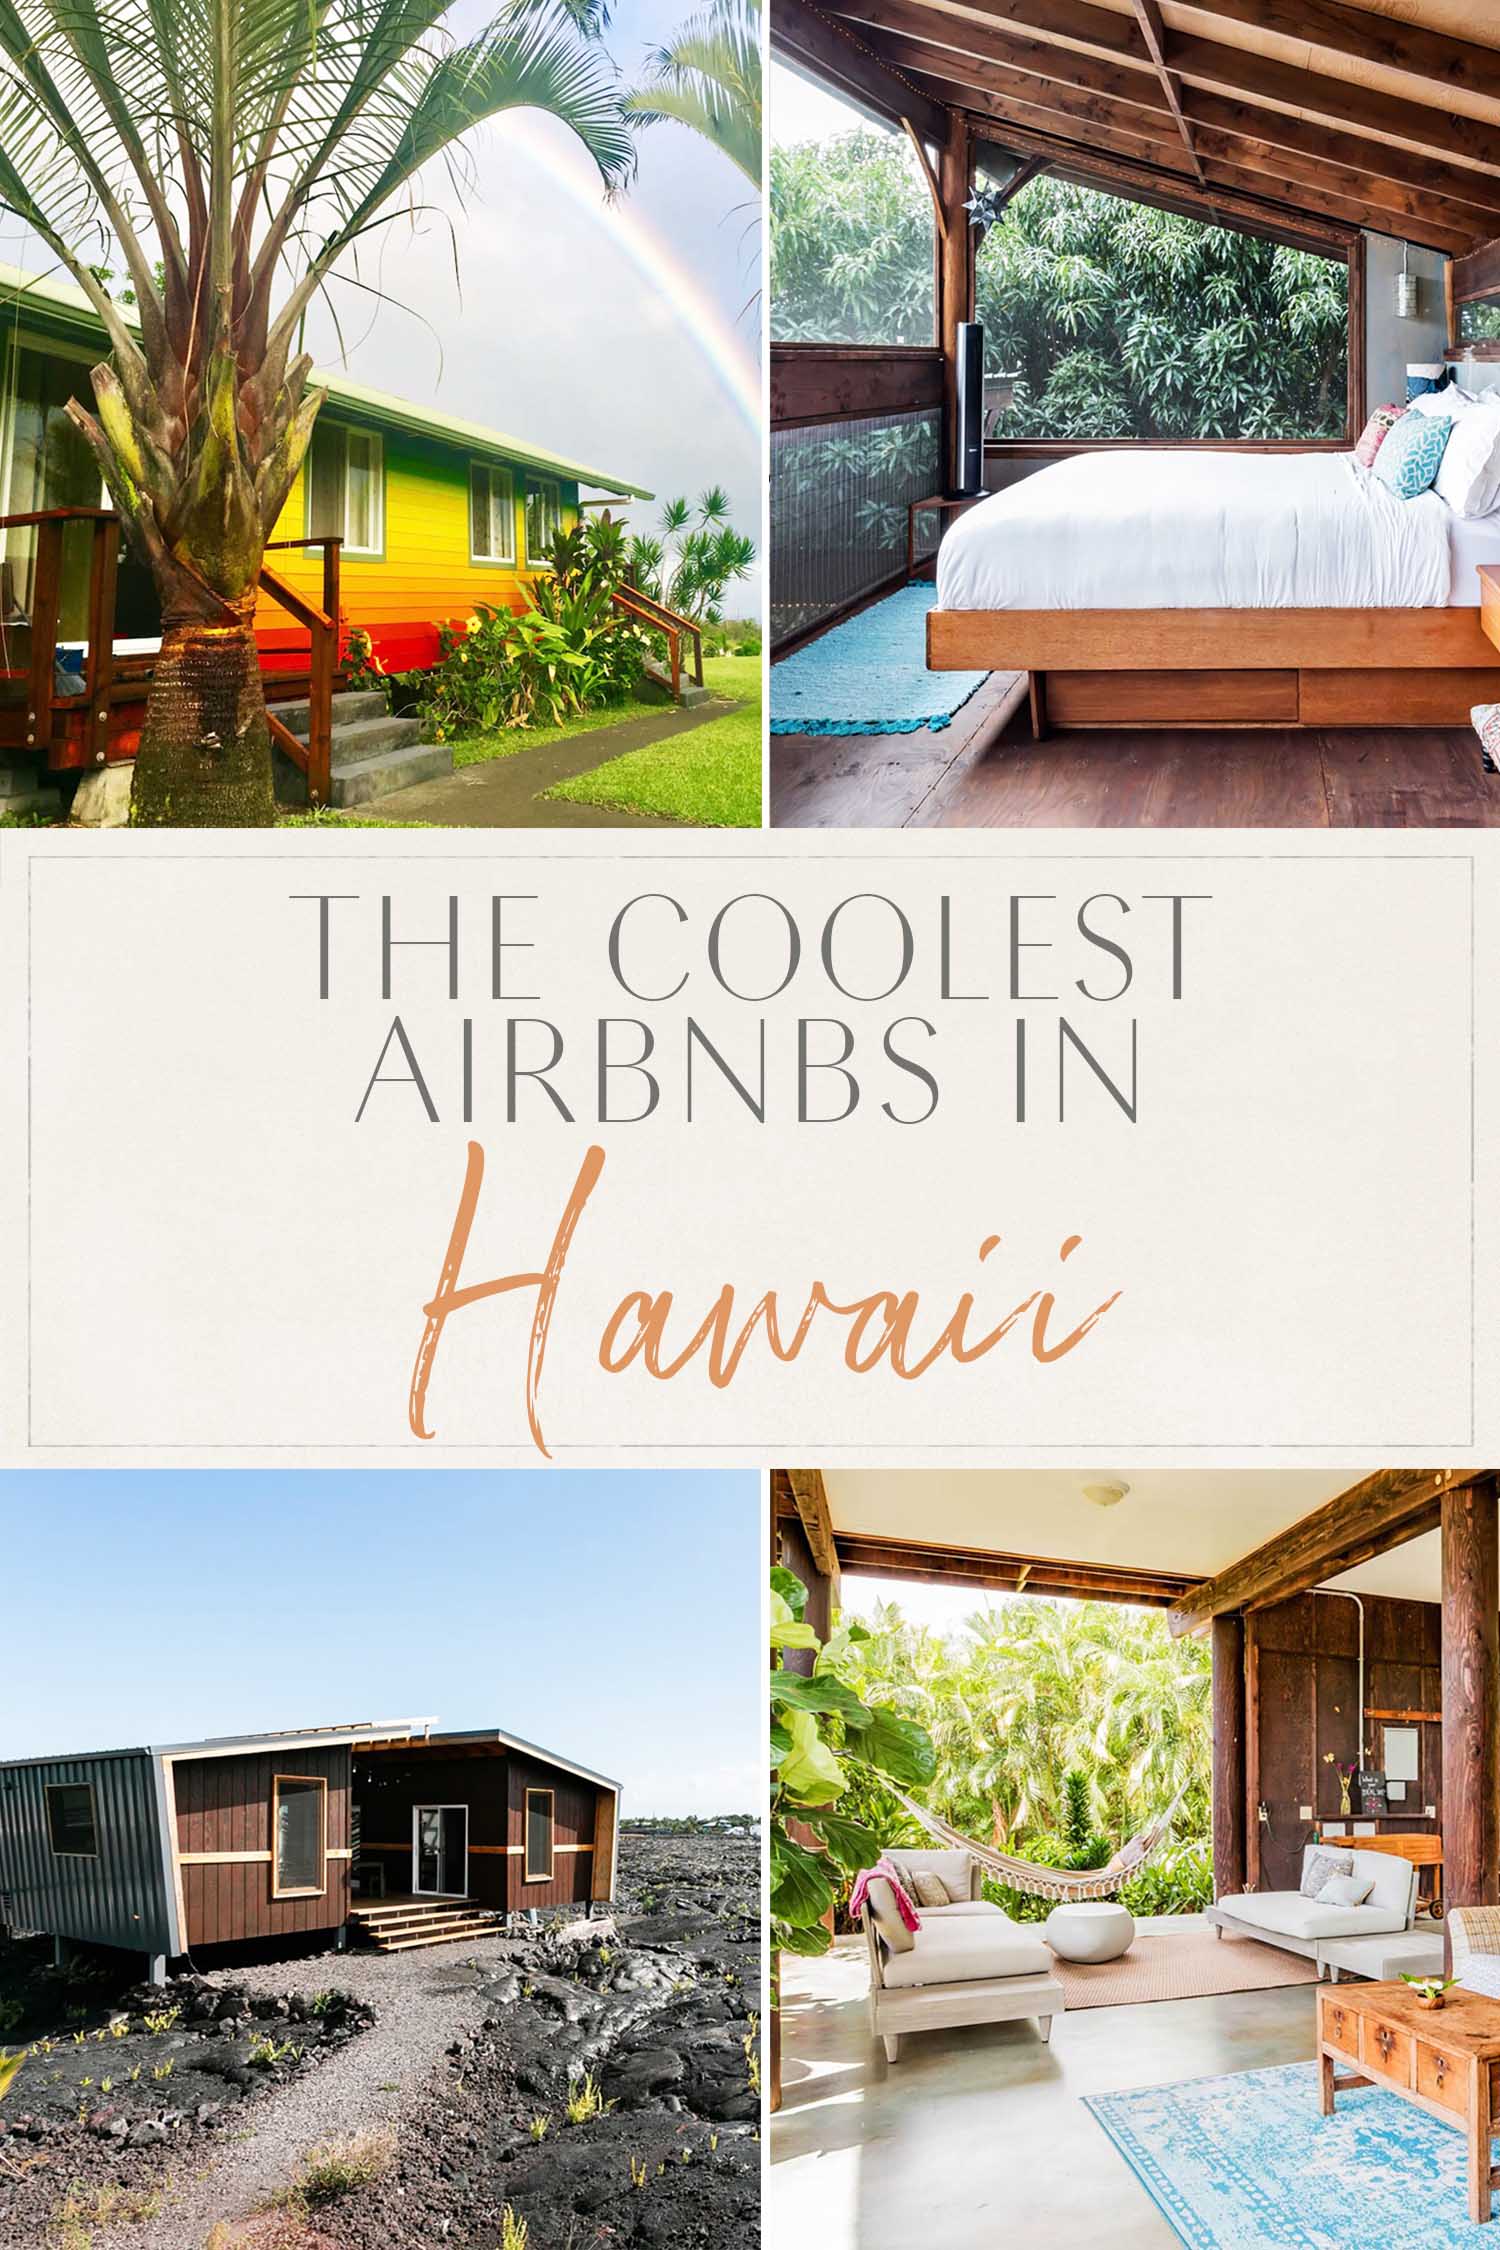  самые крутые airbnbs гавайи 